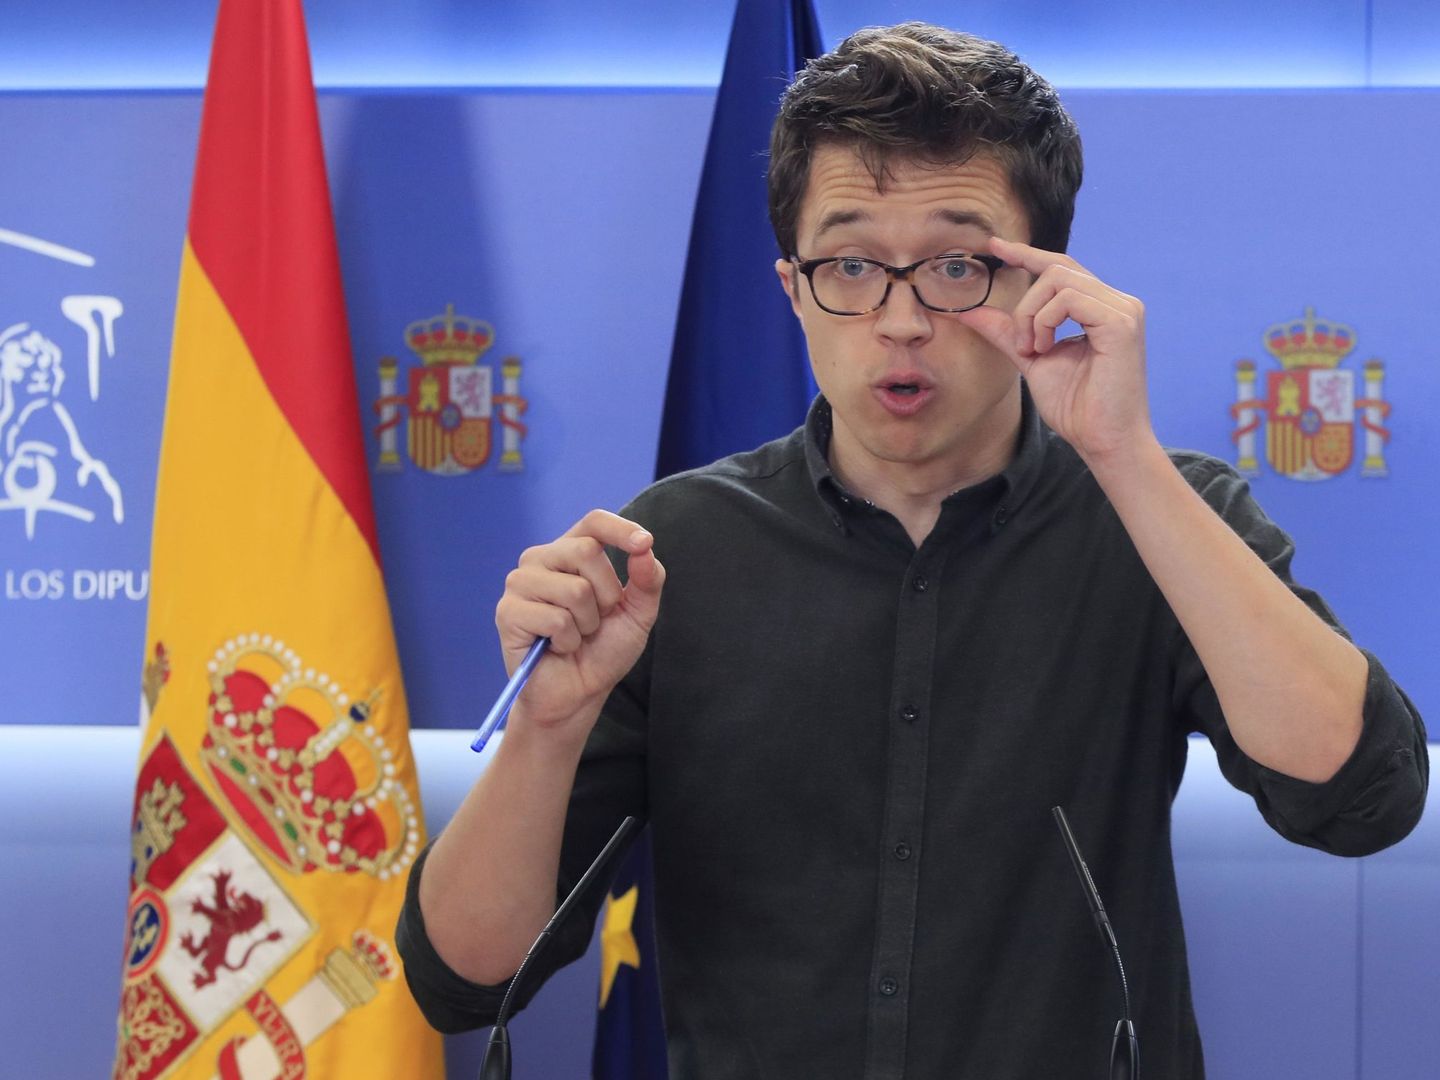 El líder de Más País, Íñigo Errejón, da una rueda de prensa en el Congreso de los Diputados. (EFE)